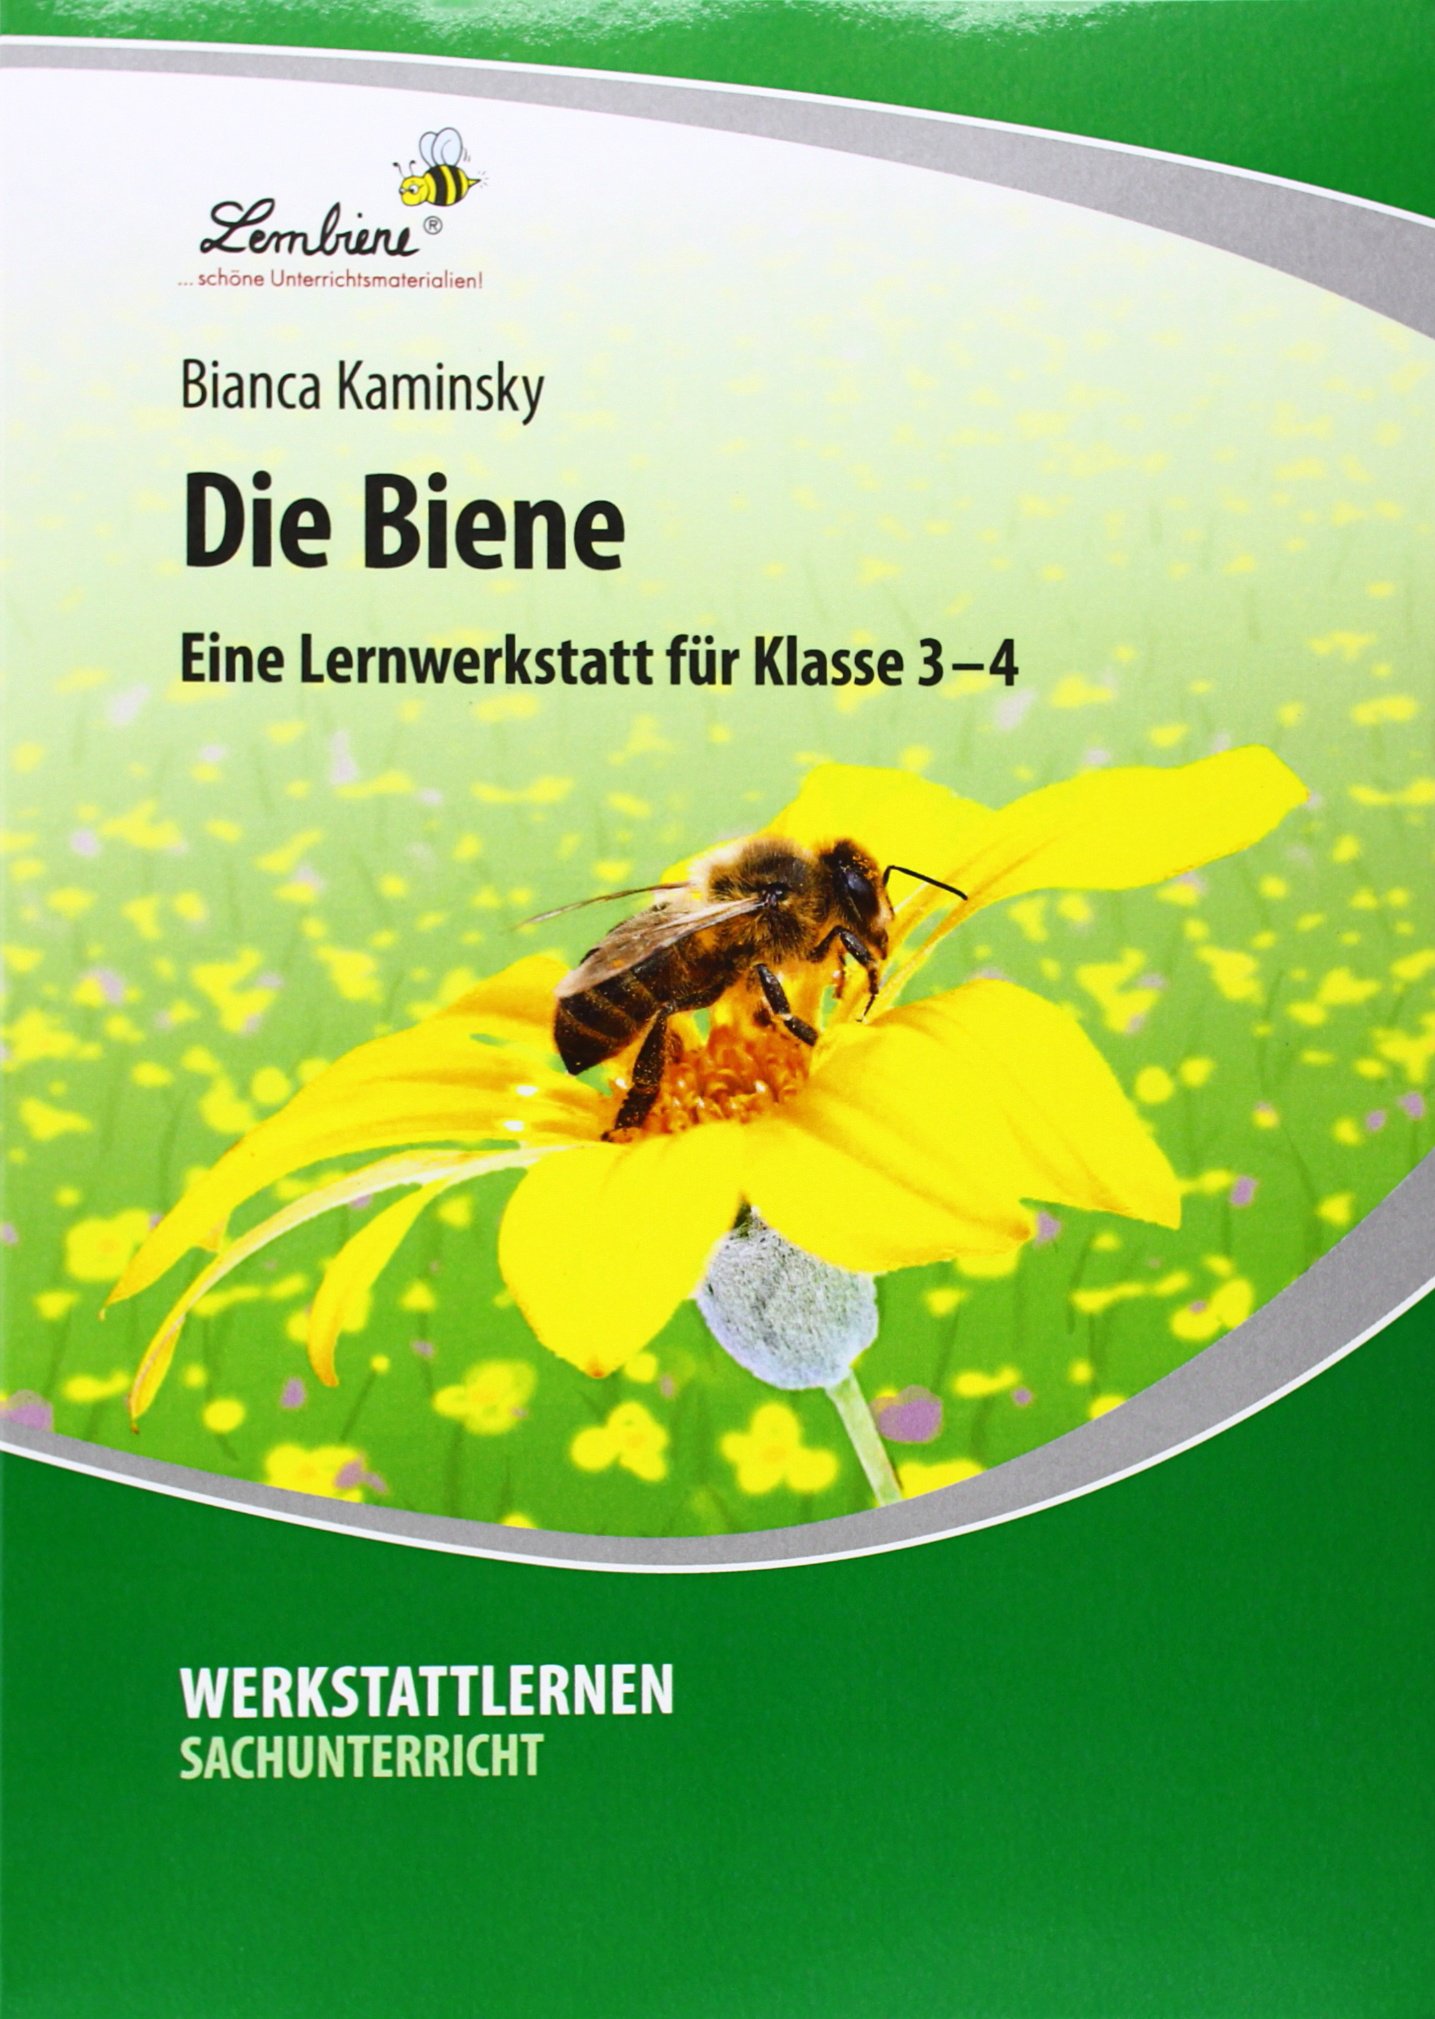 BienenLehrwerkstatt